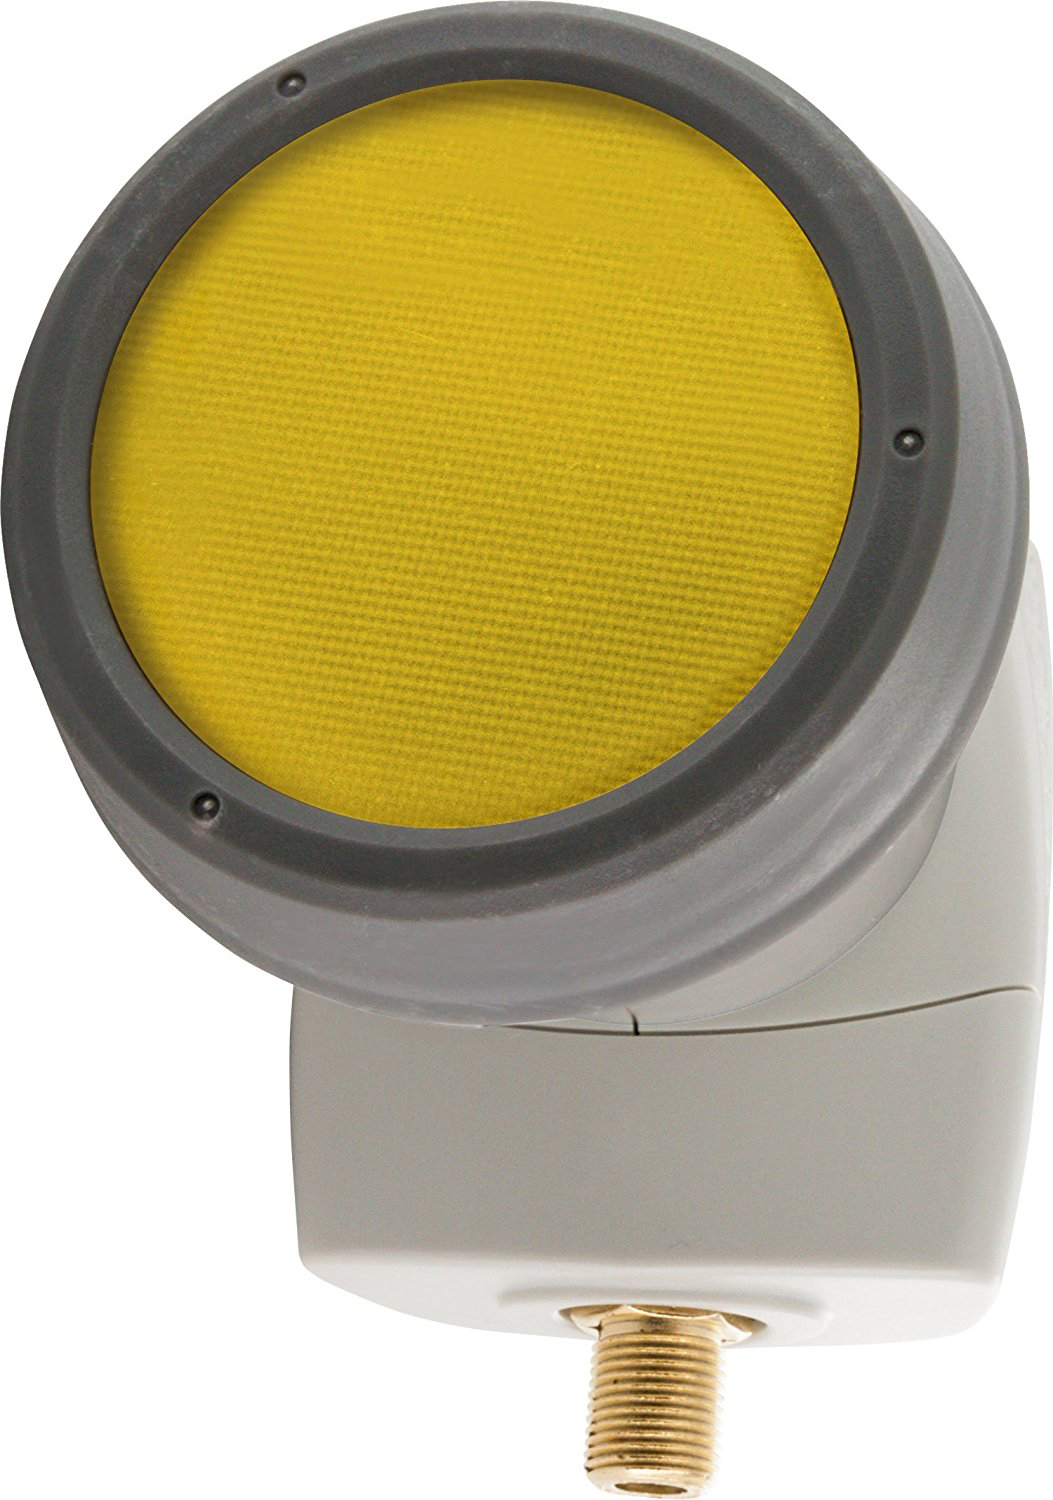 SCHWAIGER -SPS6810H 511- SUN - vergoldeten PROTECT Anschlüssen LNB Digitales mit Single